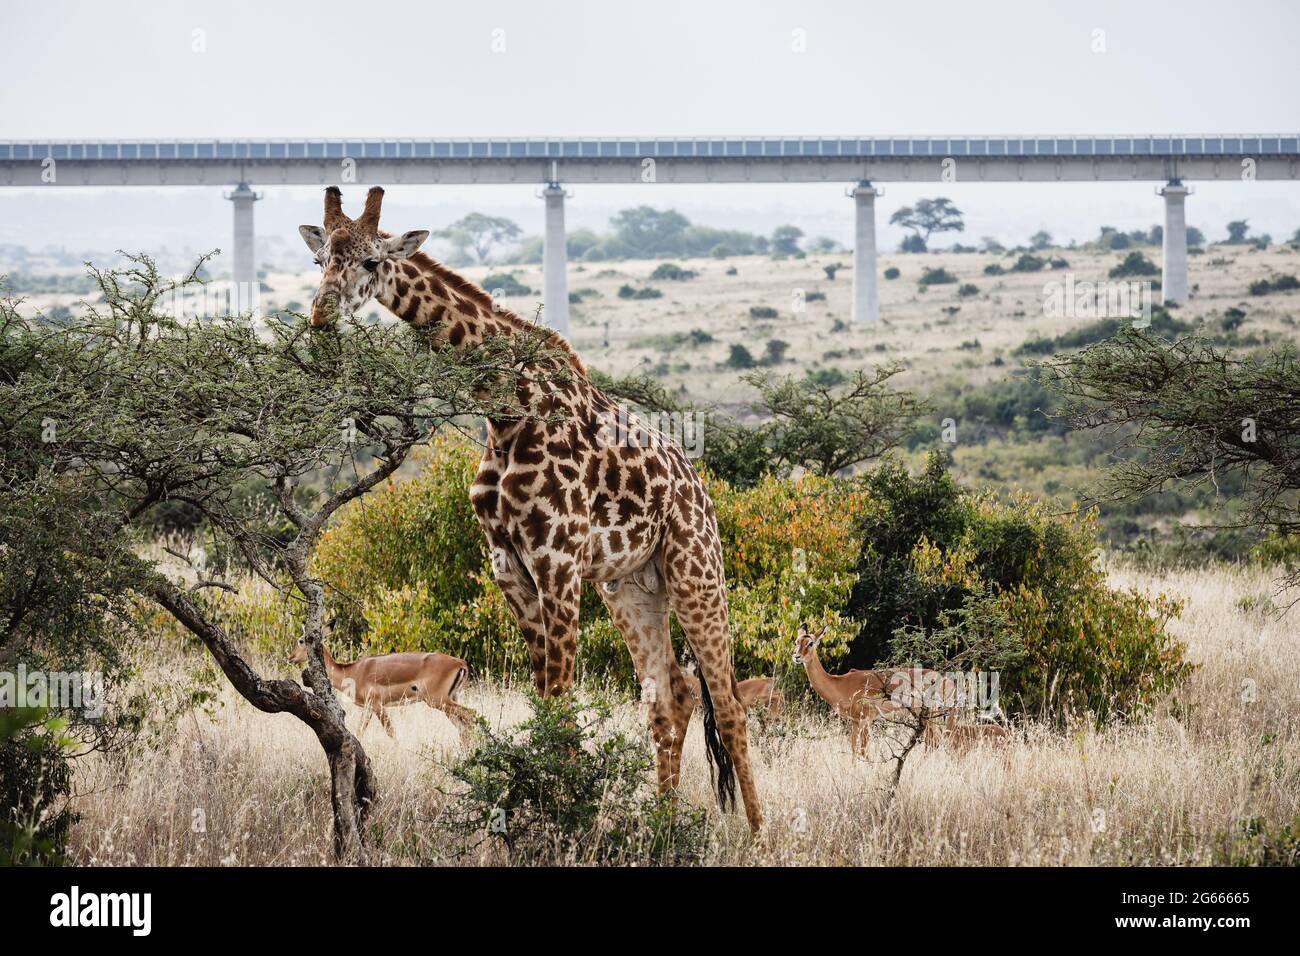 Animals in the wild - Giraffe in Nairobi National Park, Kenya Stock Photo